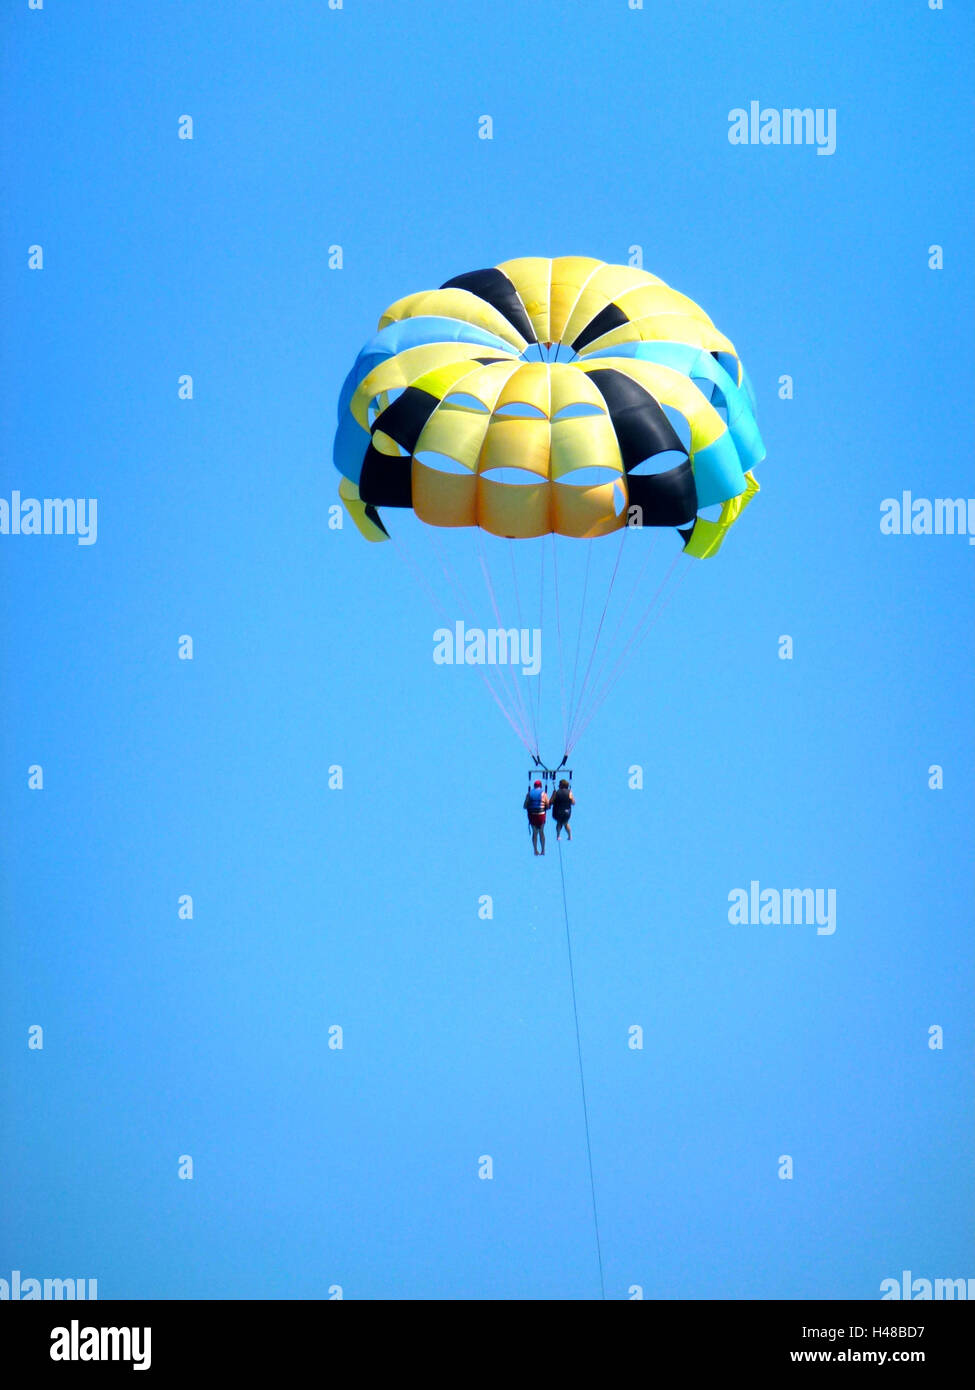 Il parasailing nel cielo blu, paracadute colorato, due persone, Foto Stock